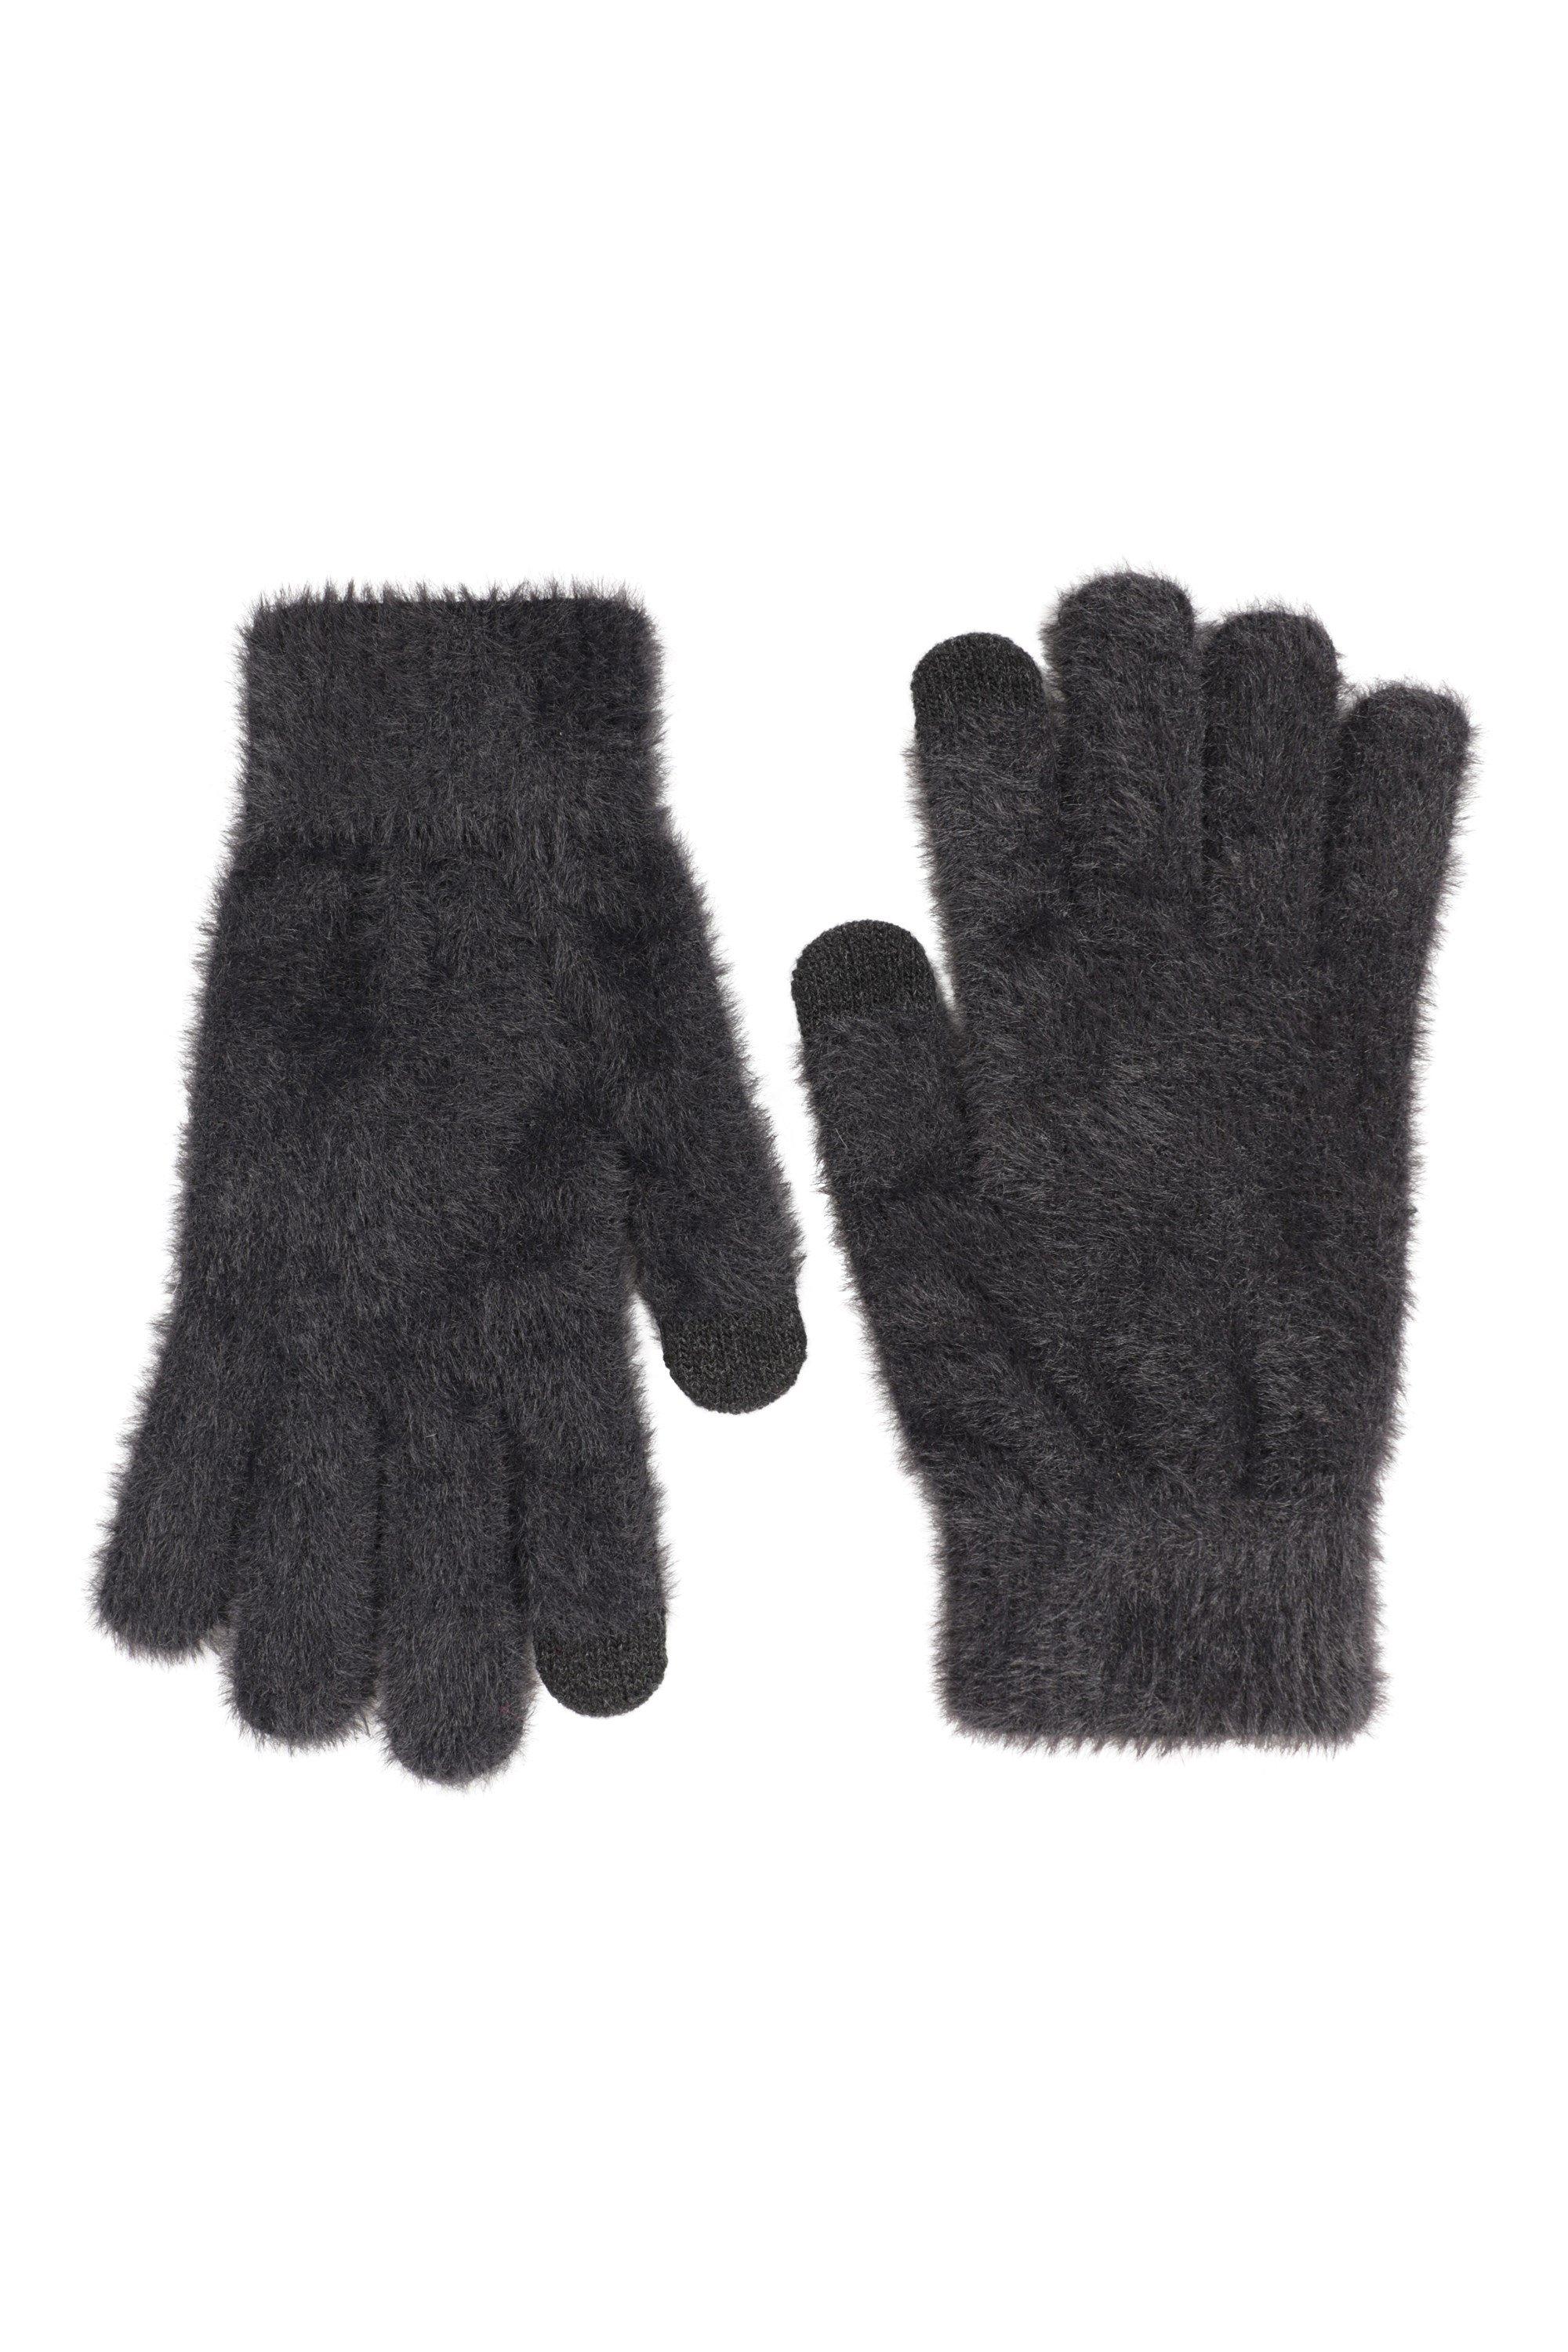 зимние теплые мужские перчатки для вождения с флисовой подкладкой теплые варежки для сенсорного экрана кожаные перчатки Мягкие перчатки для сенсорного экрана. Теплые зимние варежки. Mountain Warehouse, черный